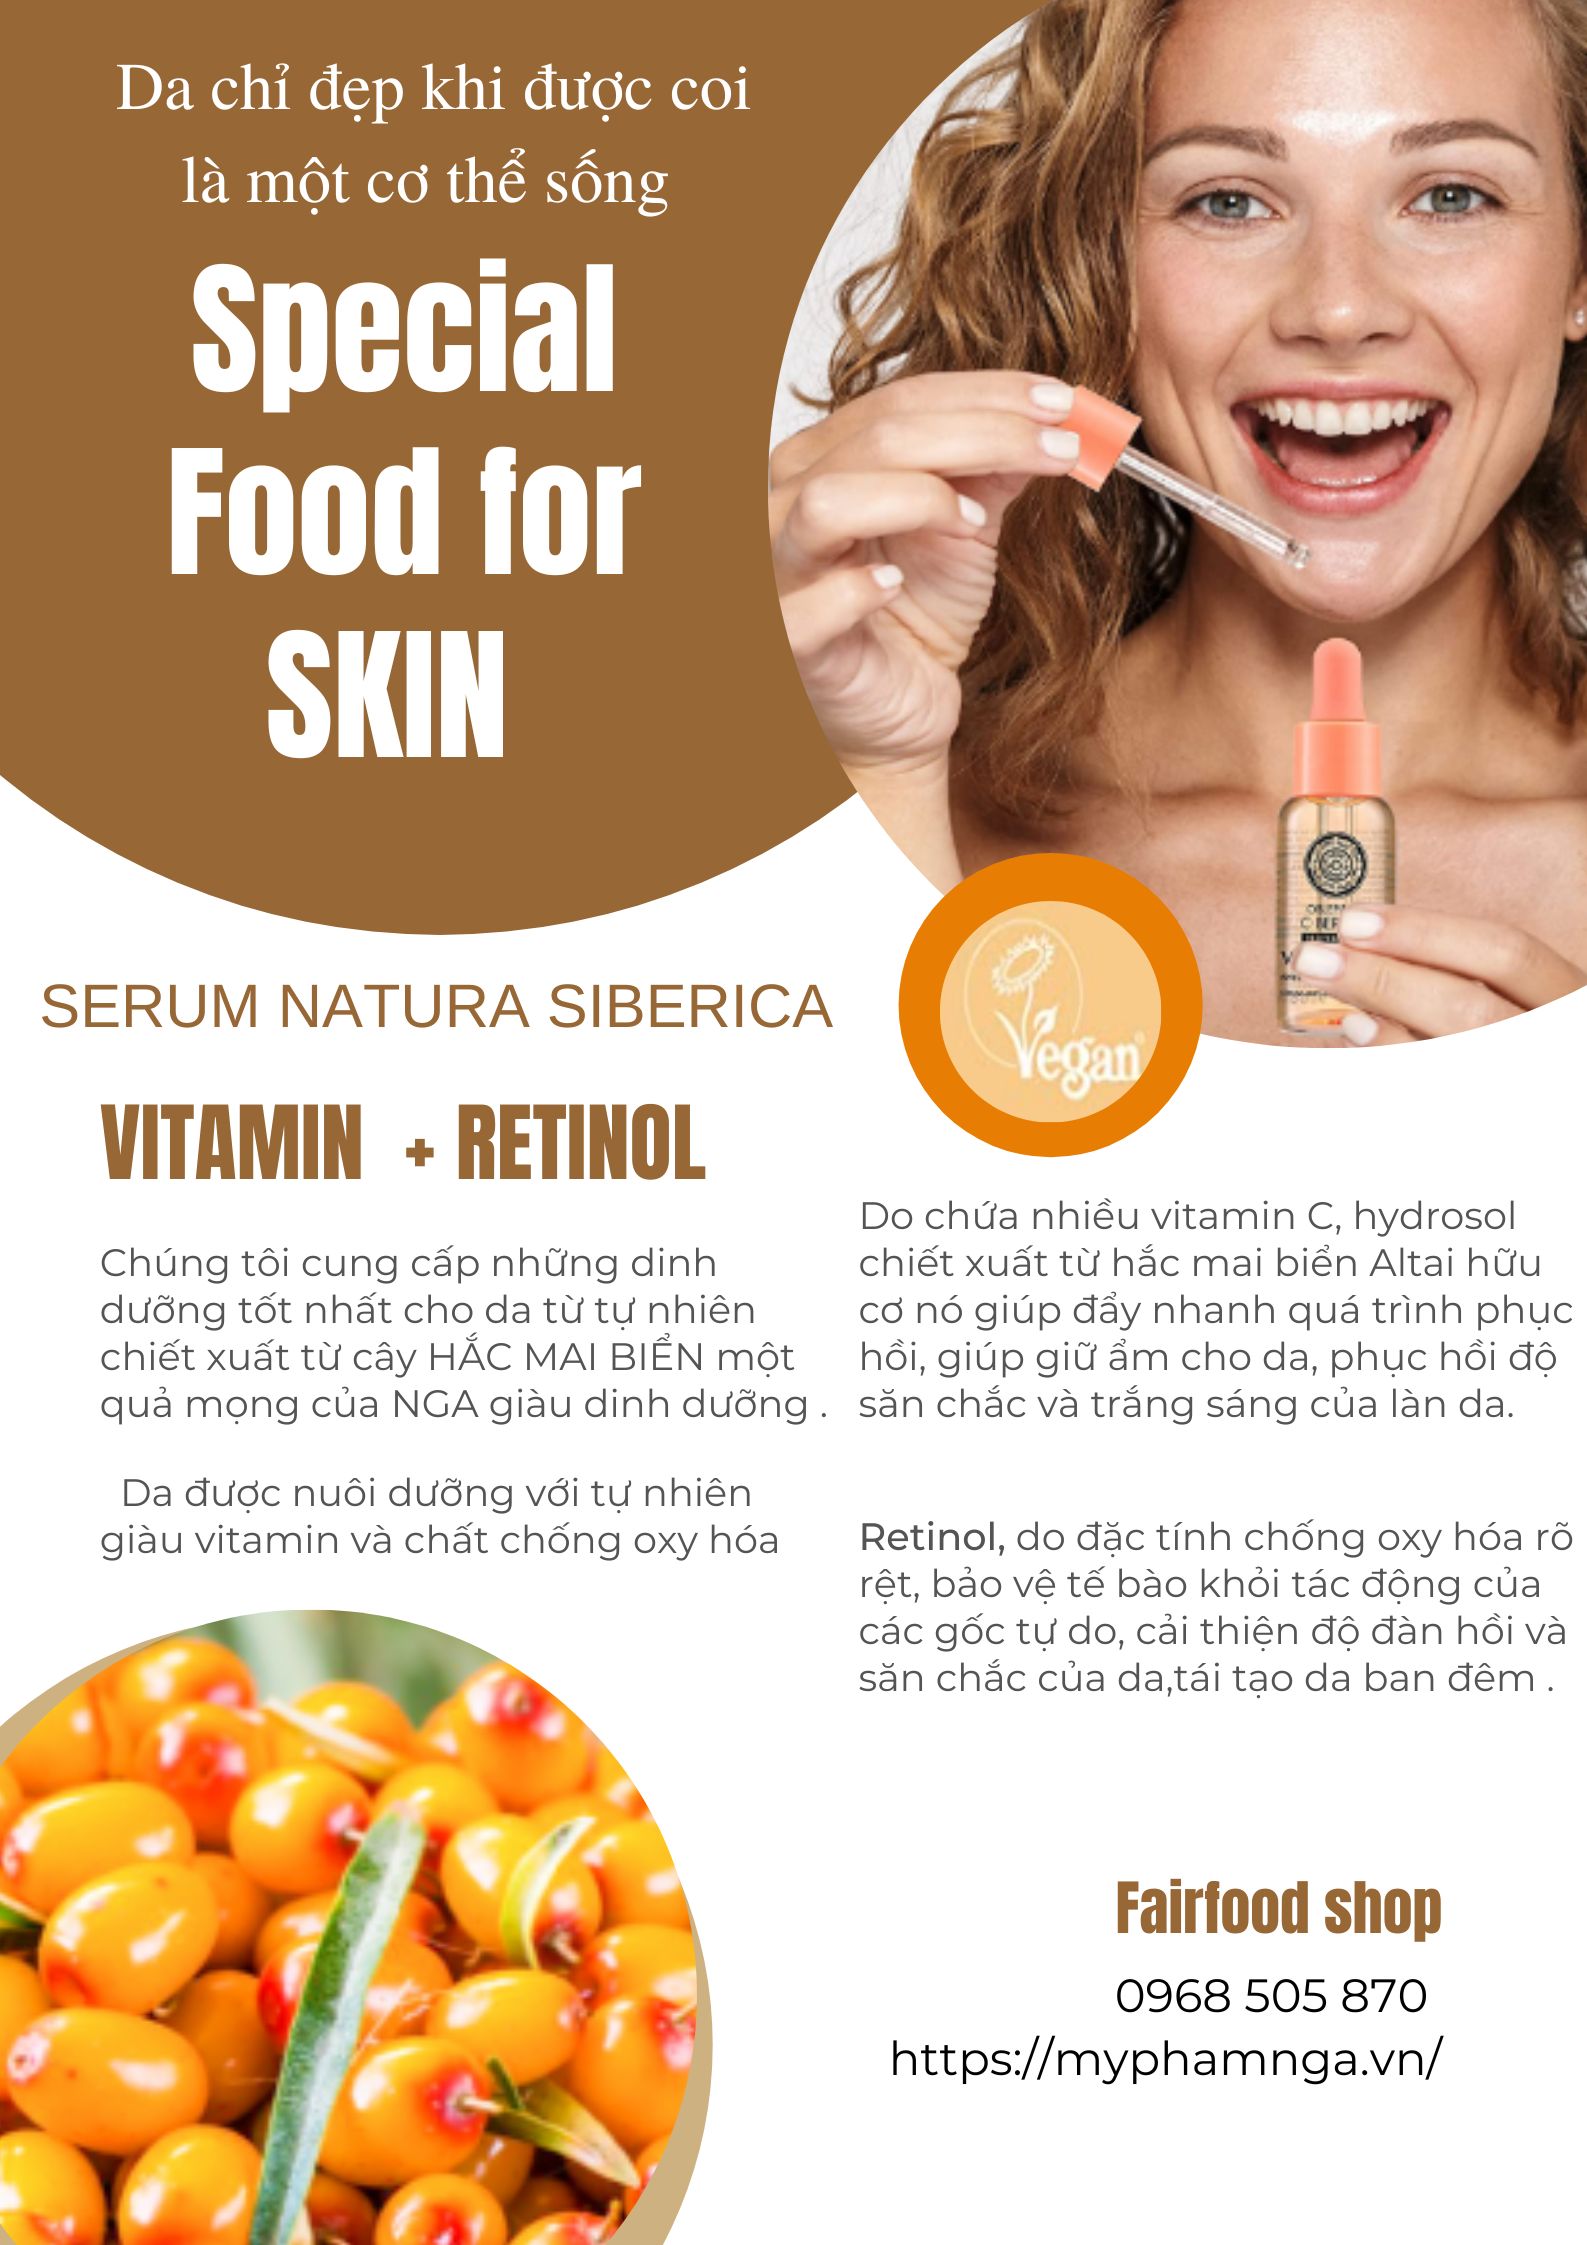 Serum vitamin C retinol antioxidant biocosmetic natura siberica tre hoa duong am,trang da5